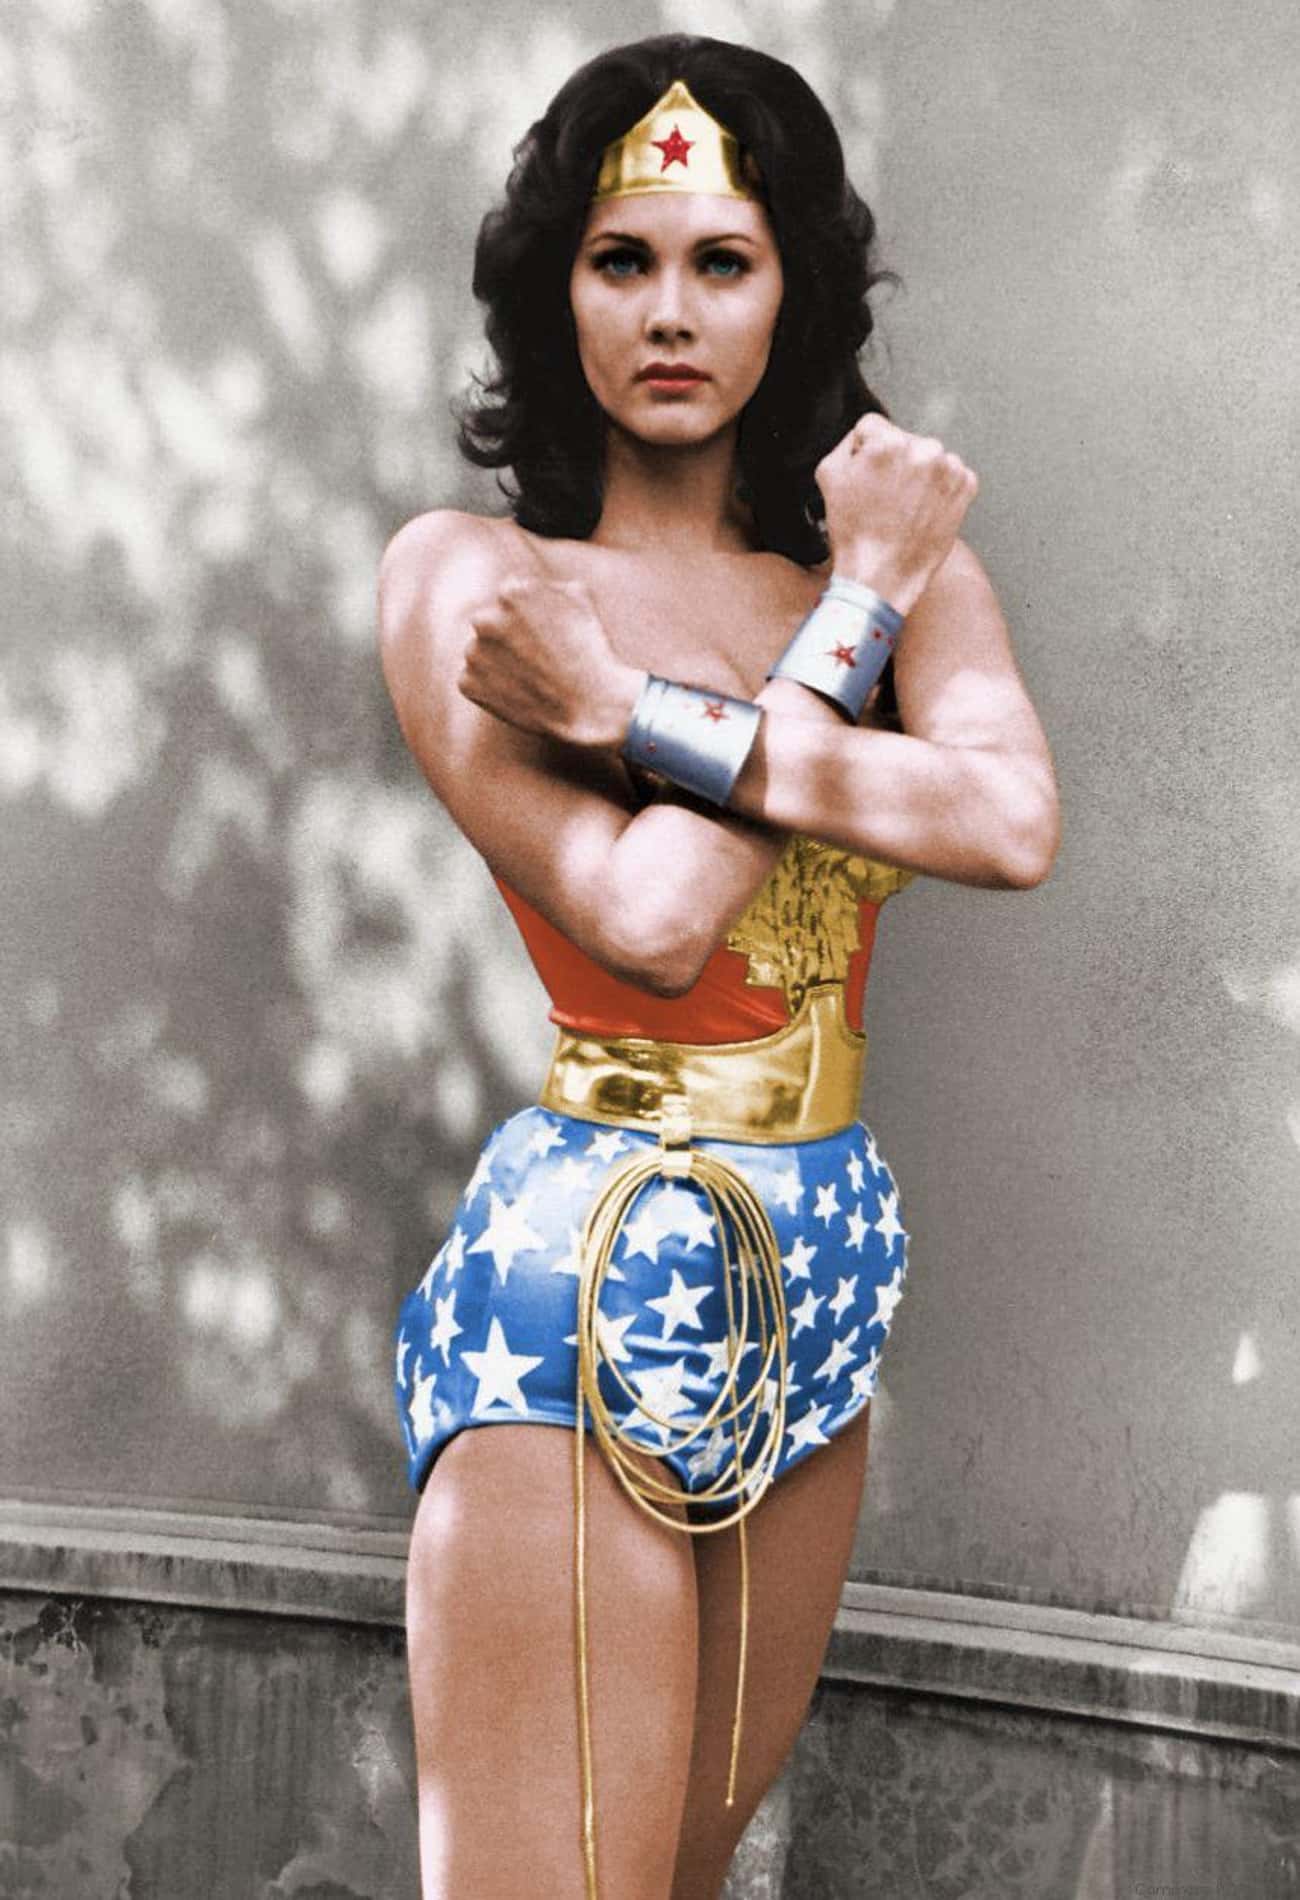 She Was the First Mainstream Female Superhero Ever